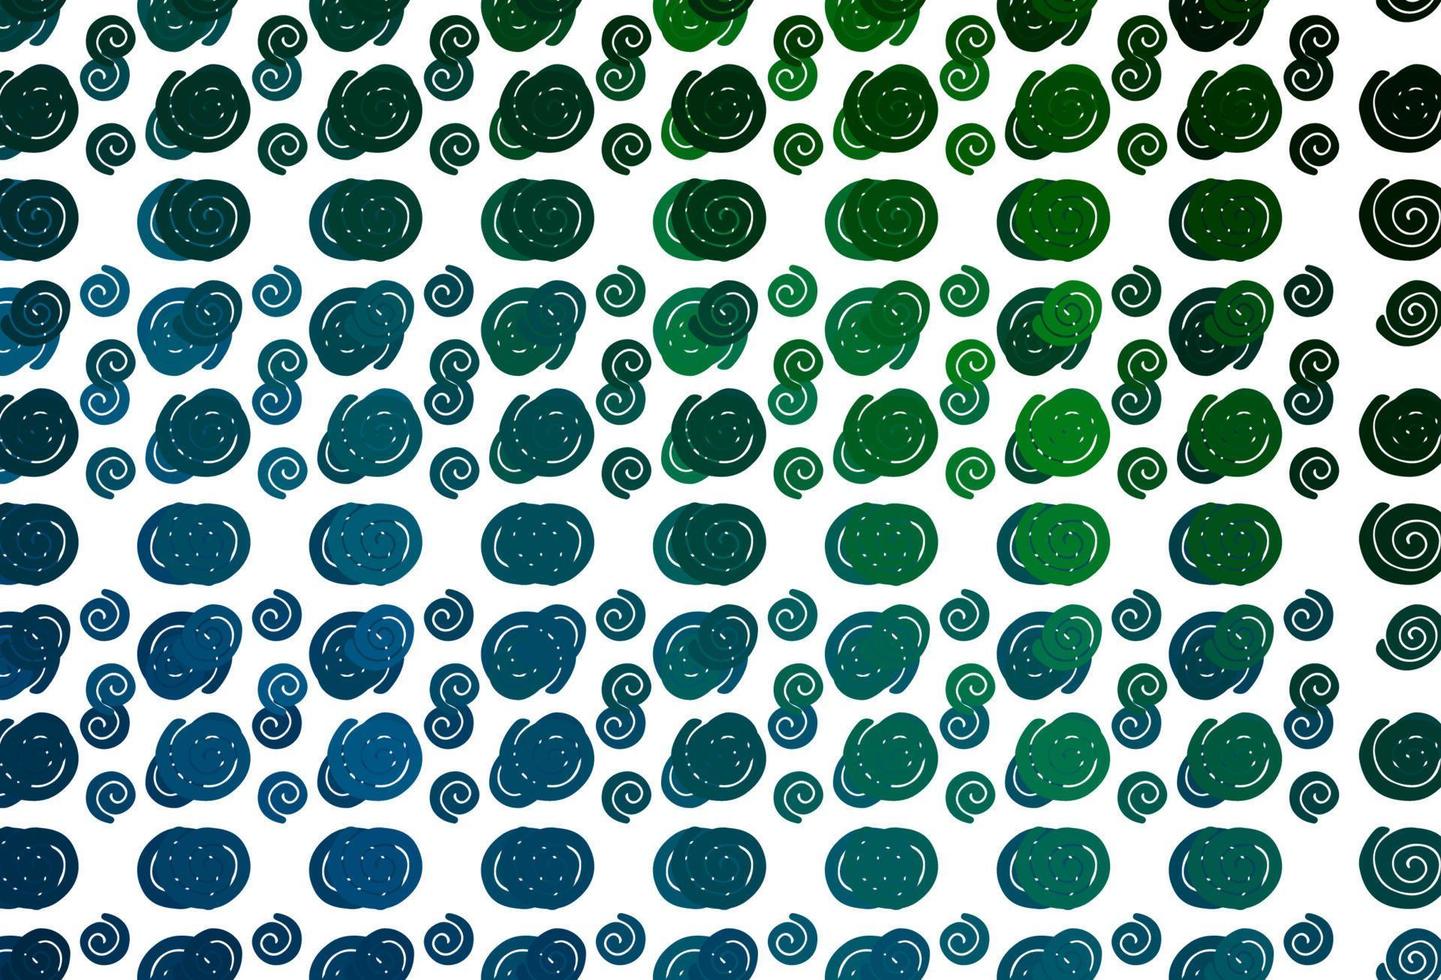 modelo de vetor azul claro e verde com formas líquidas.